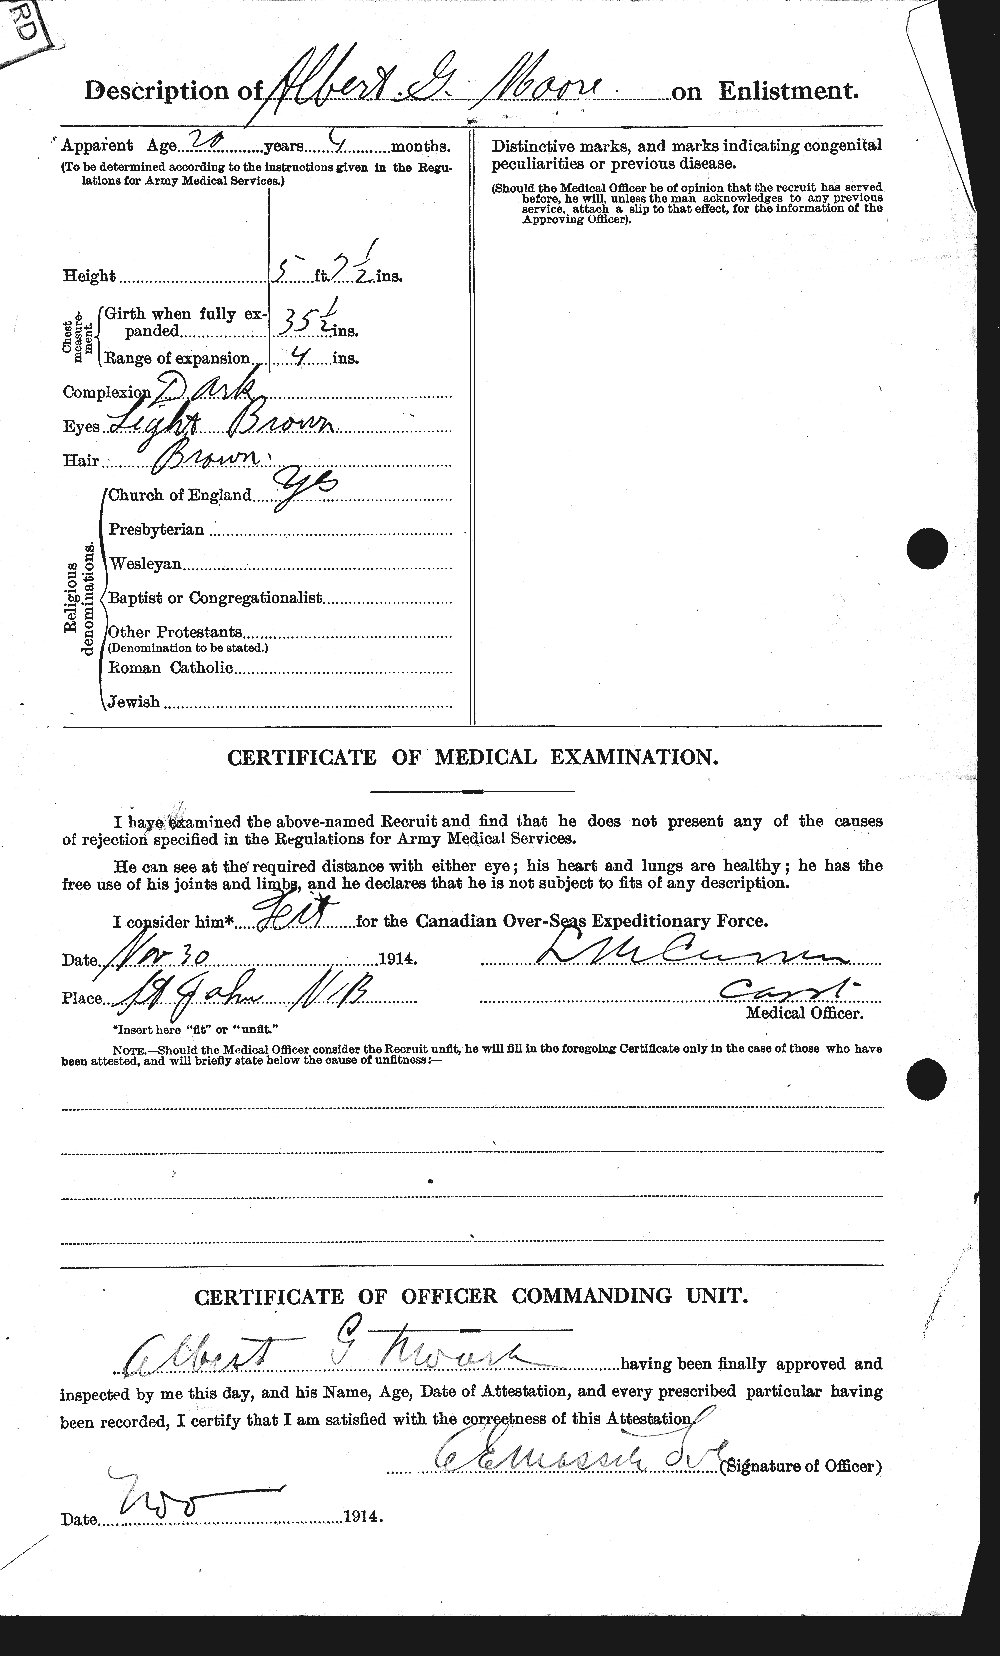 Dossiers du Personnel de la Première Guerre mondiale - CEC 506351b